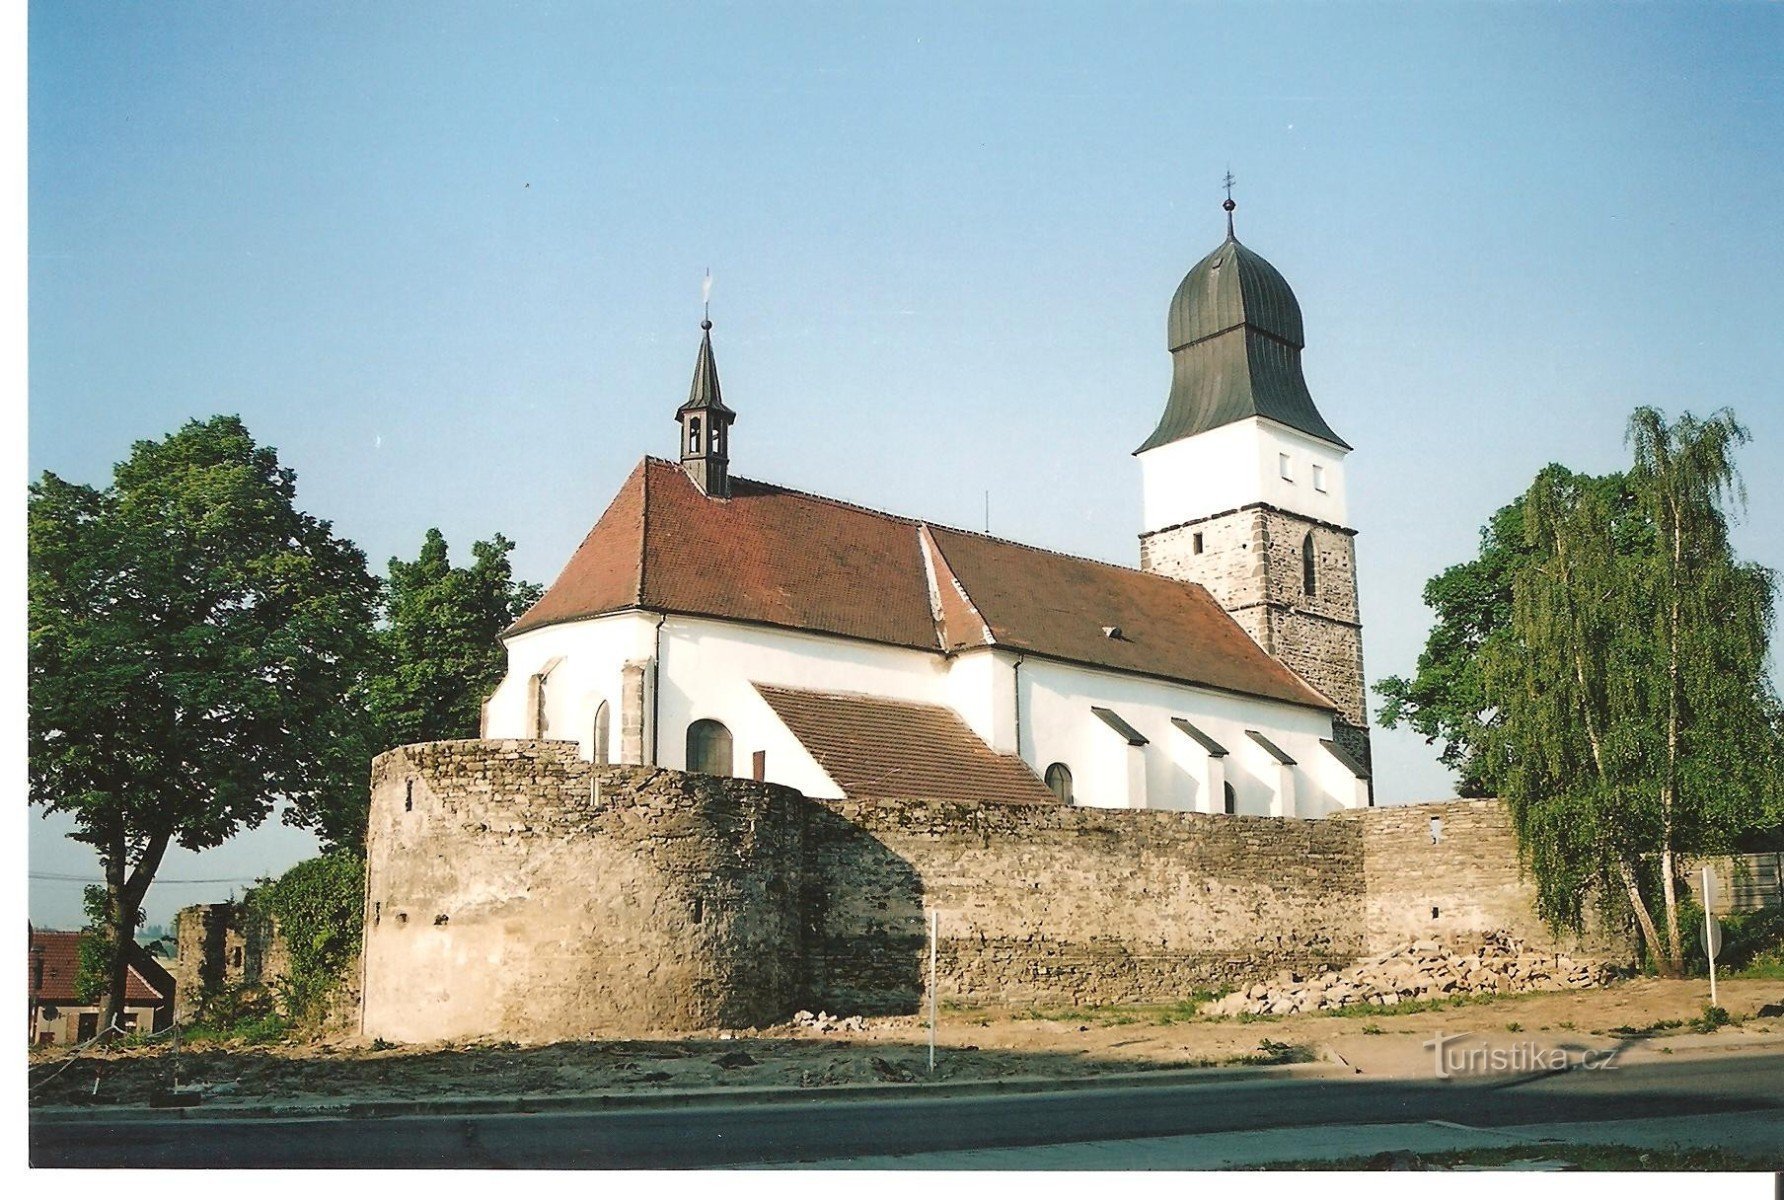 Velká Bíteš - befæstet kirke